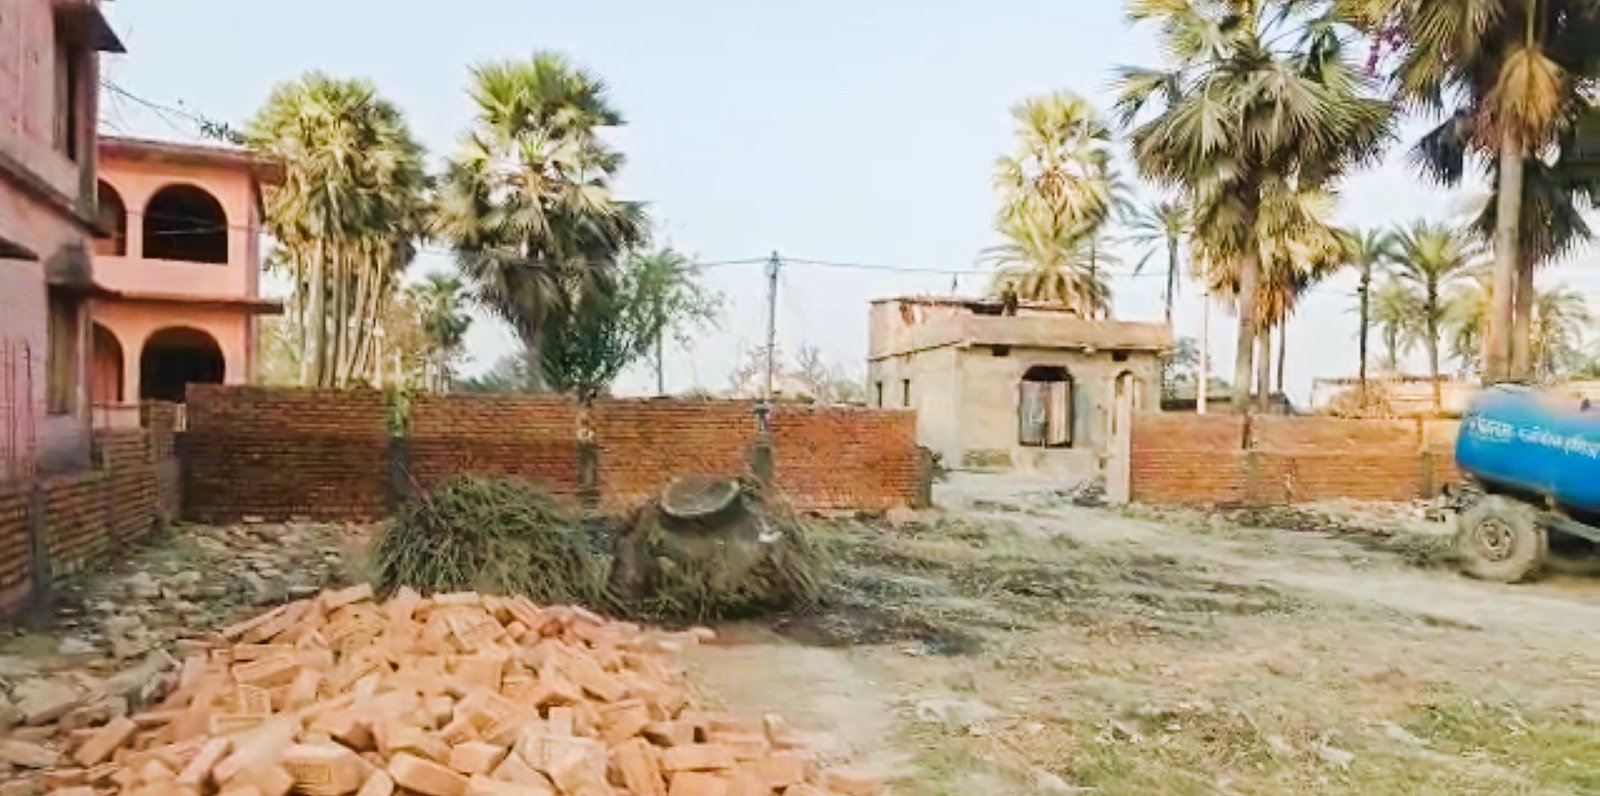 13.5 Katha Commercial Land Available For Sell at-Hajipur, Mauza-Bishunpur Baladhari - 1953